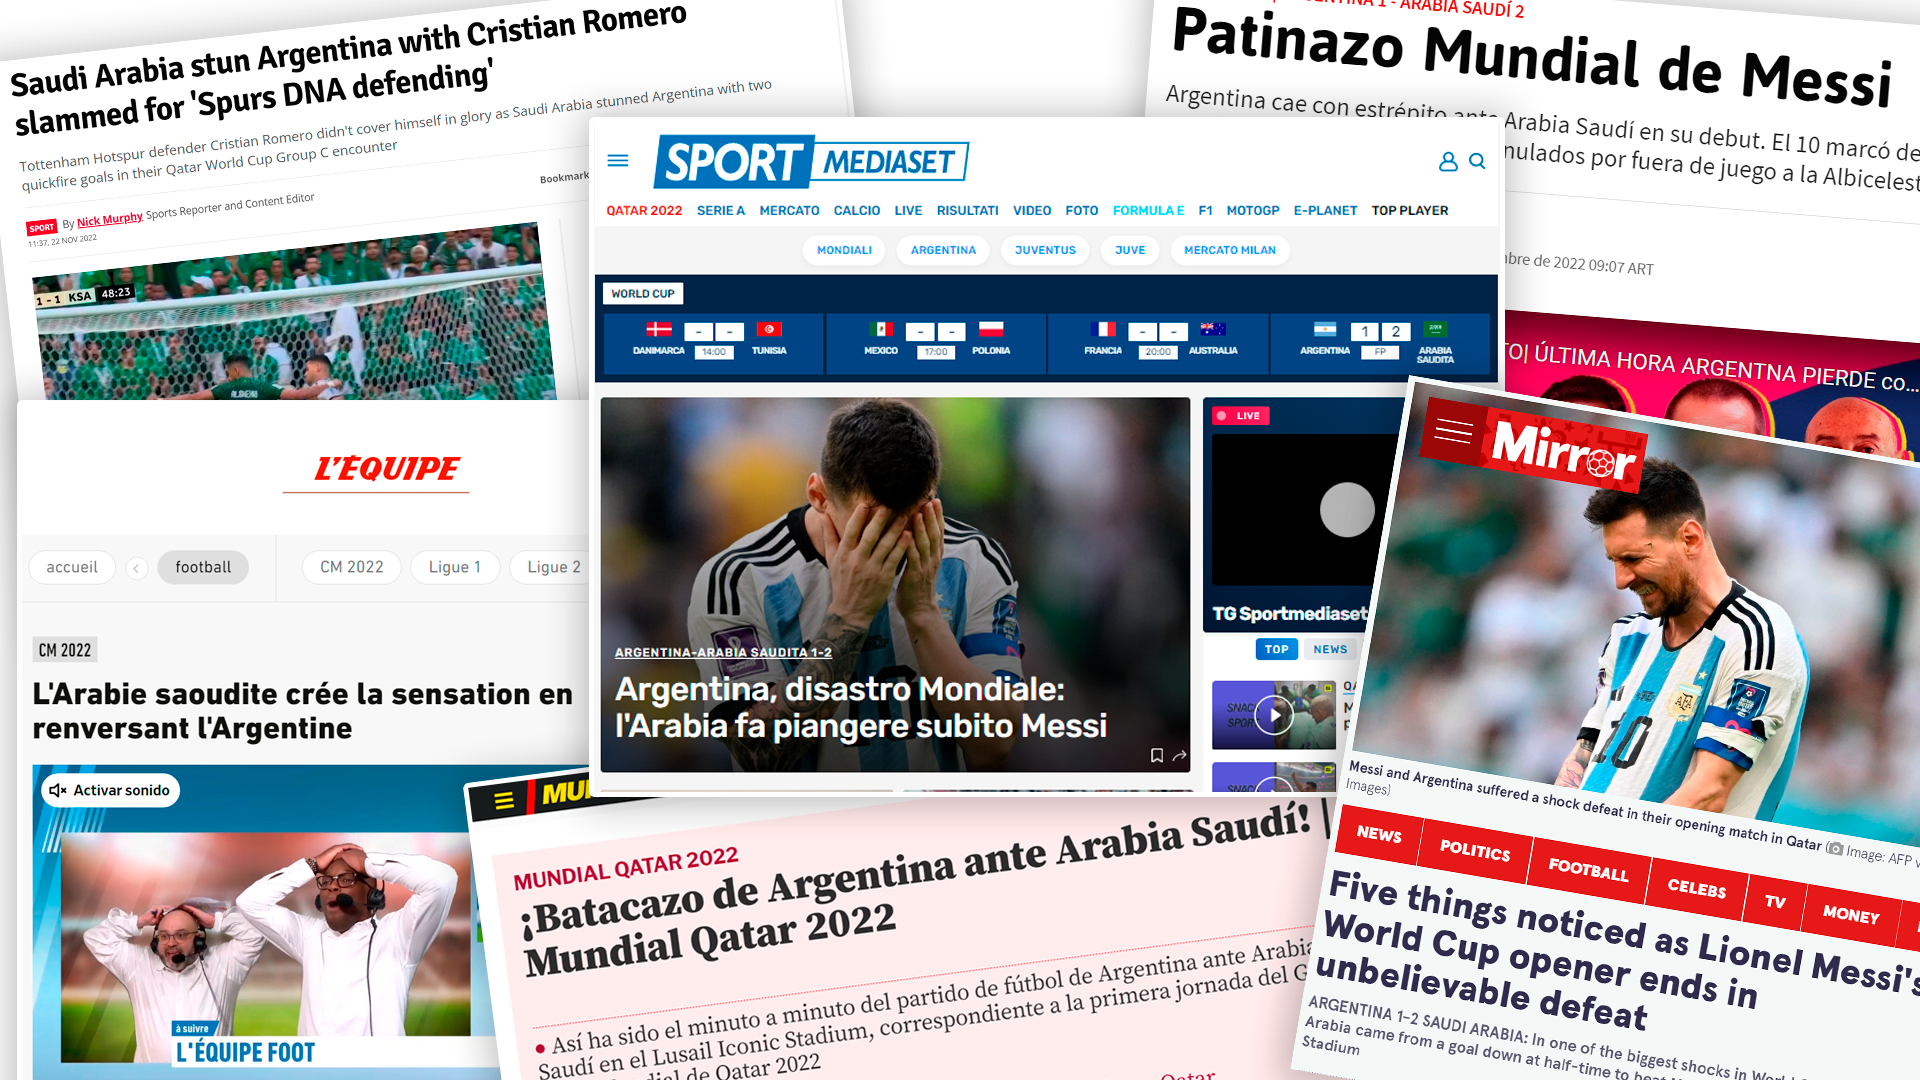 Los medios internacionales se hicieron eco de la derrota de Argentina contra Arabia Saudita 